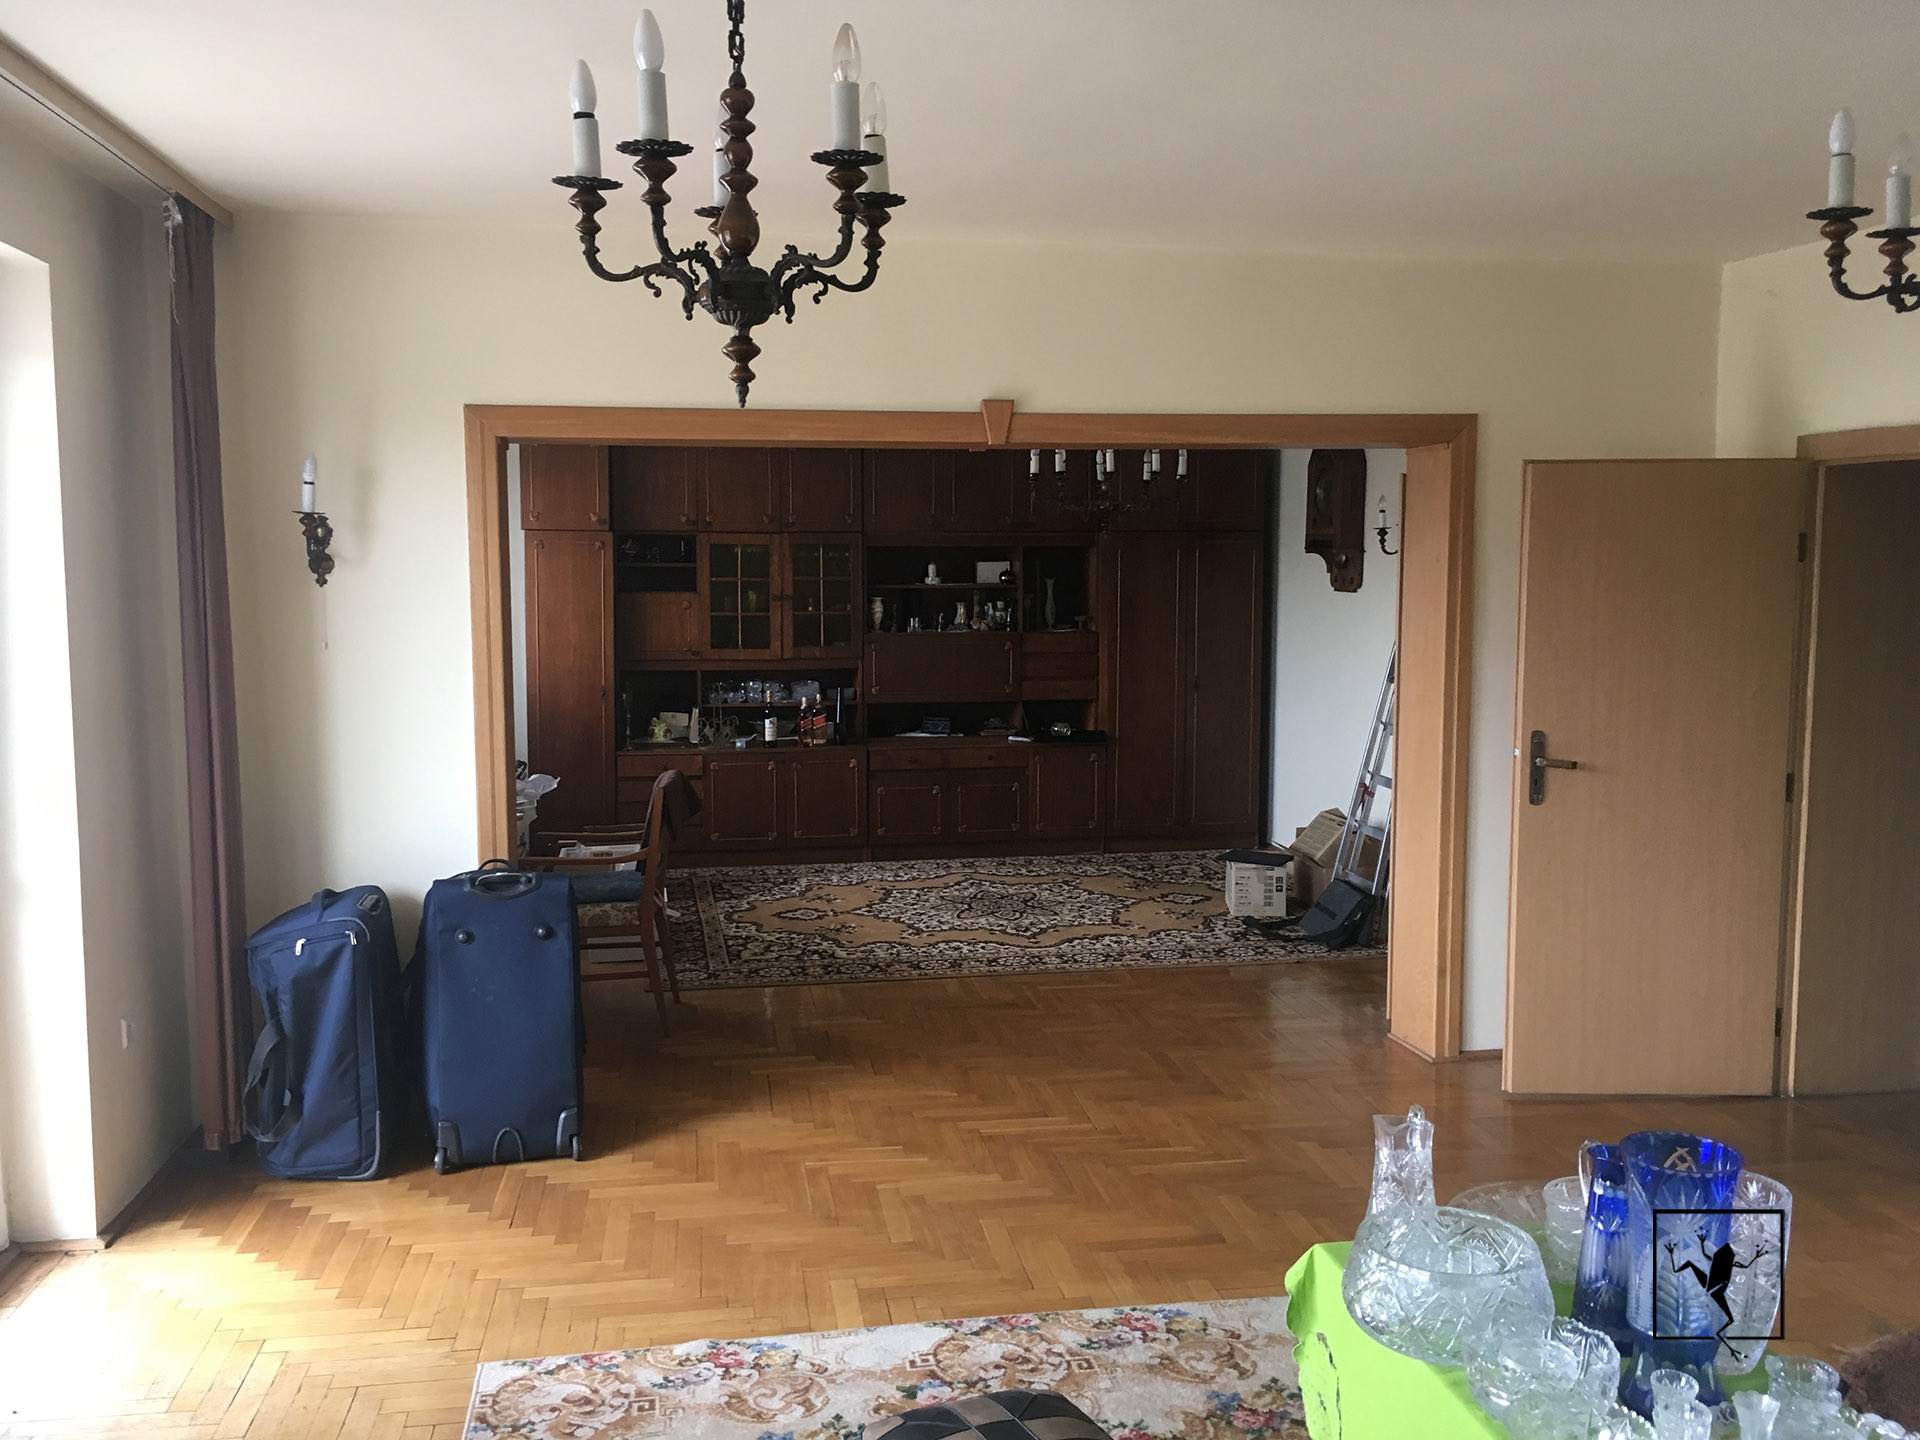 Strefa spędzania wolnego czasu - remont domu na Śląsku | Frog Studio - projektowanie wnętrz